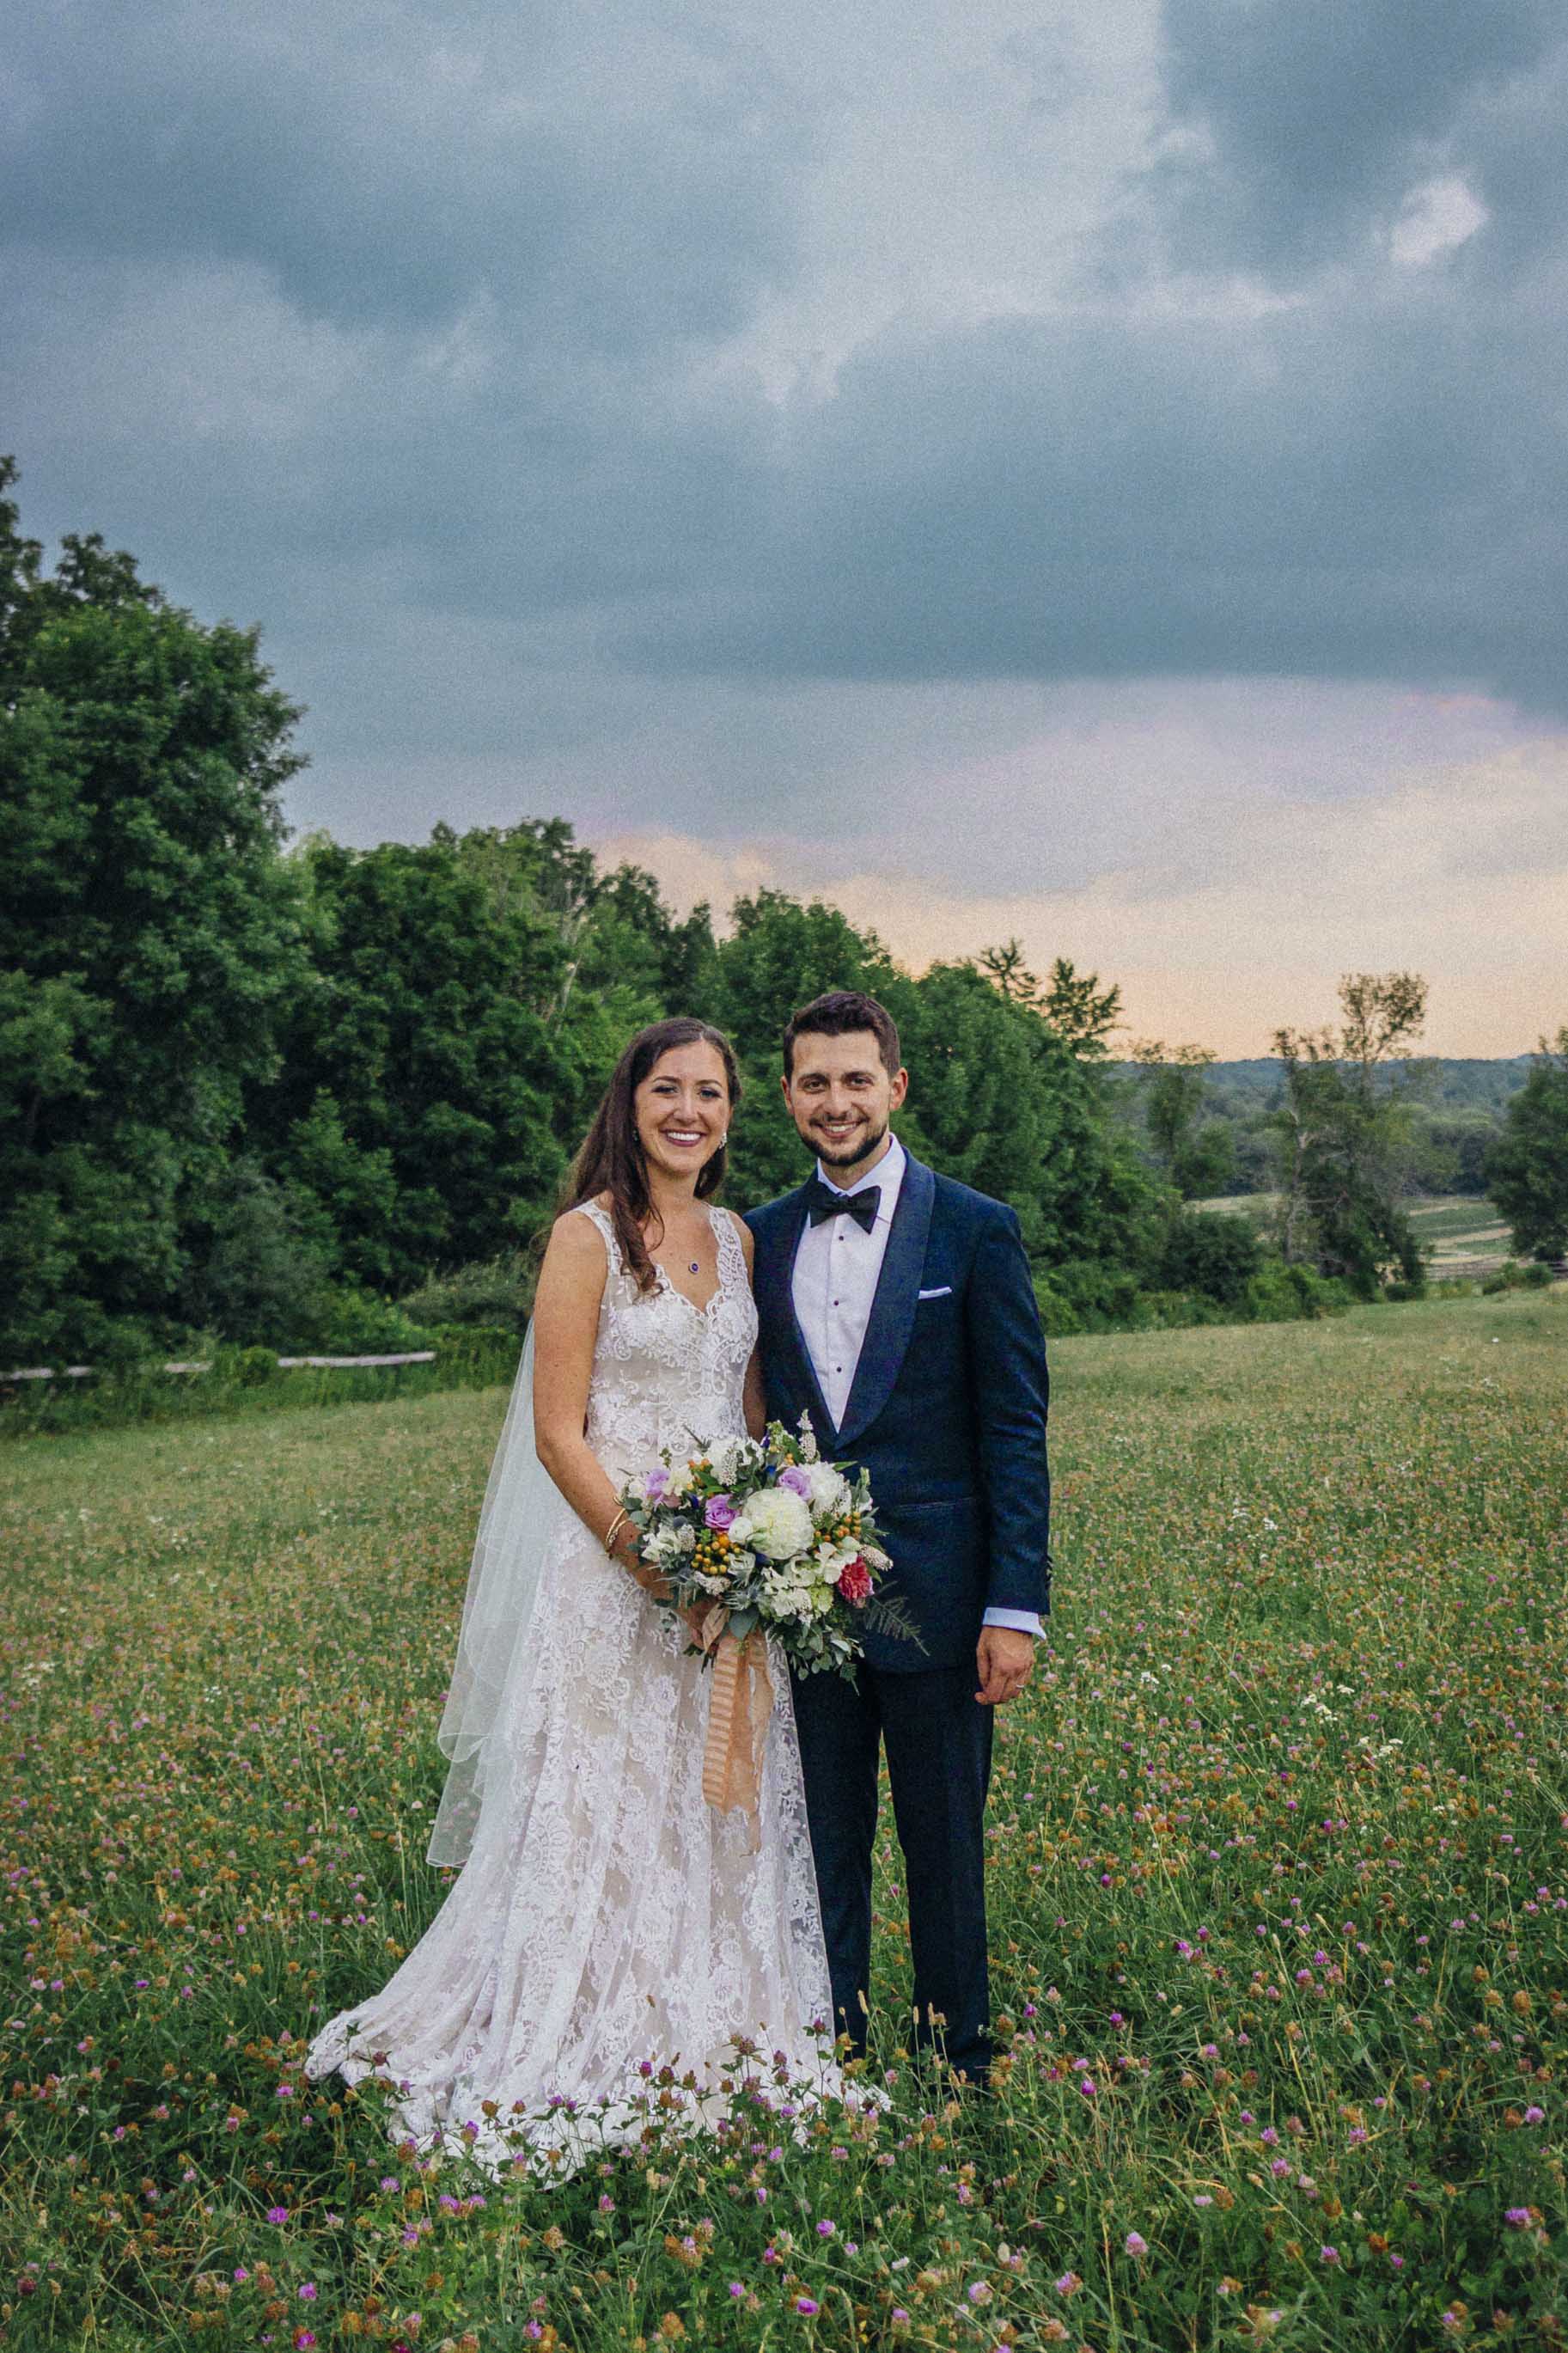  Bongiovanni wedding, 2018 